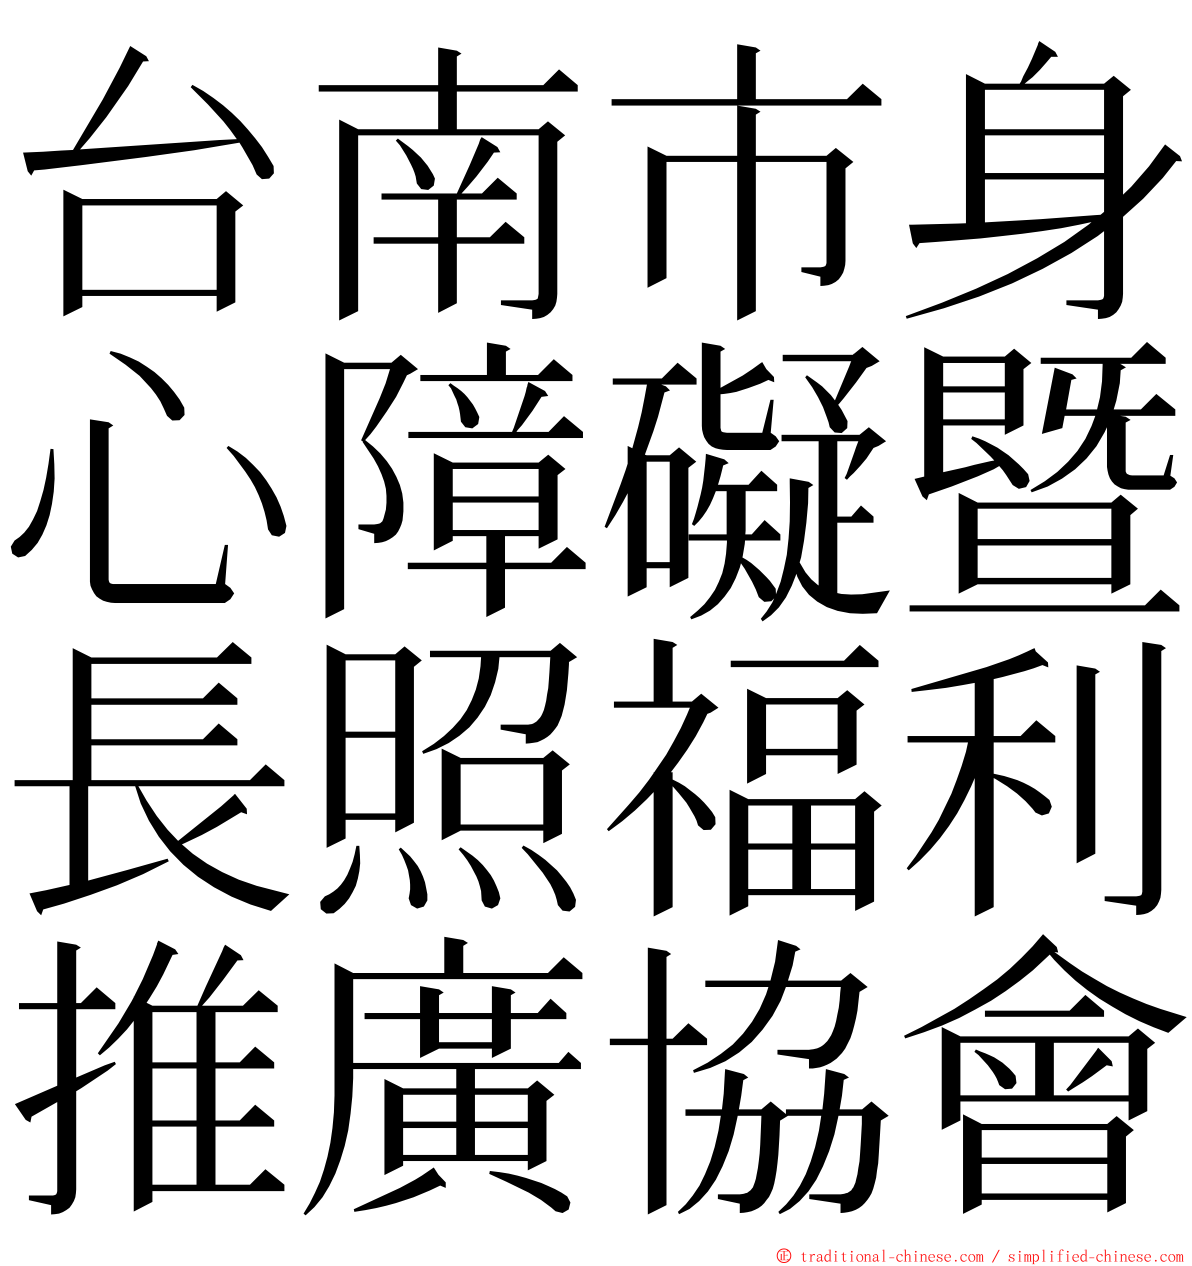 台南市身心障礙暨長照福利推廣協會 ming font